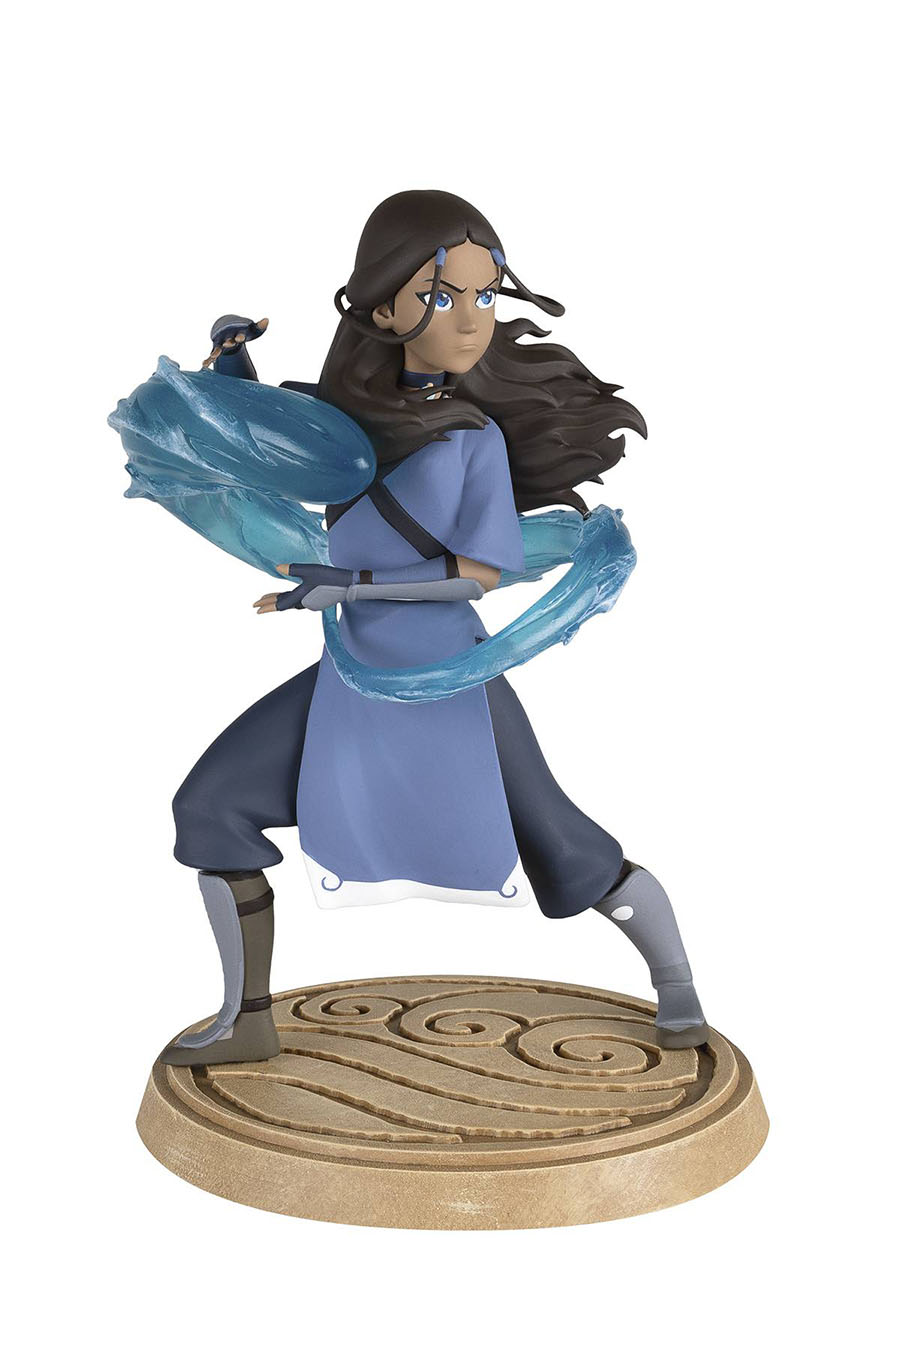 Avatar The Last Airbender Figurine - Katara